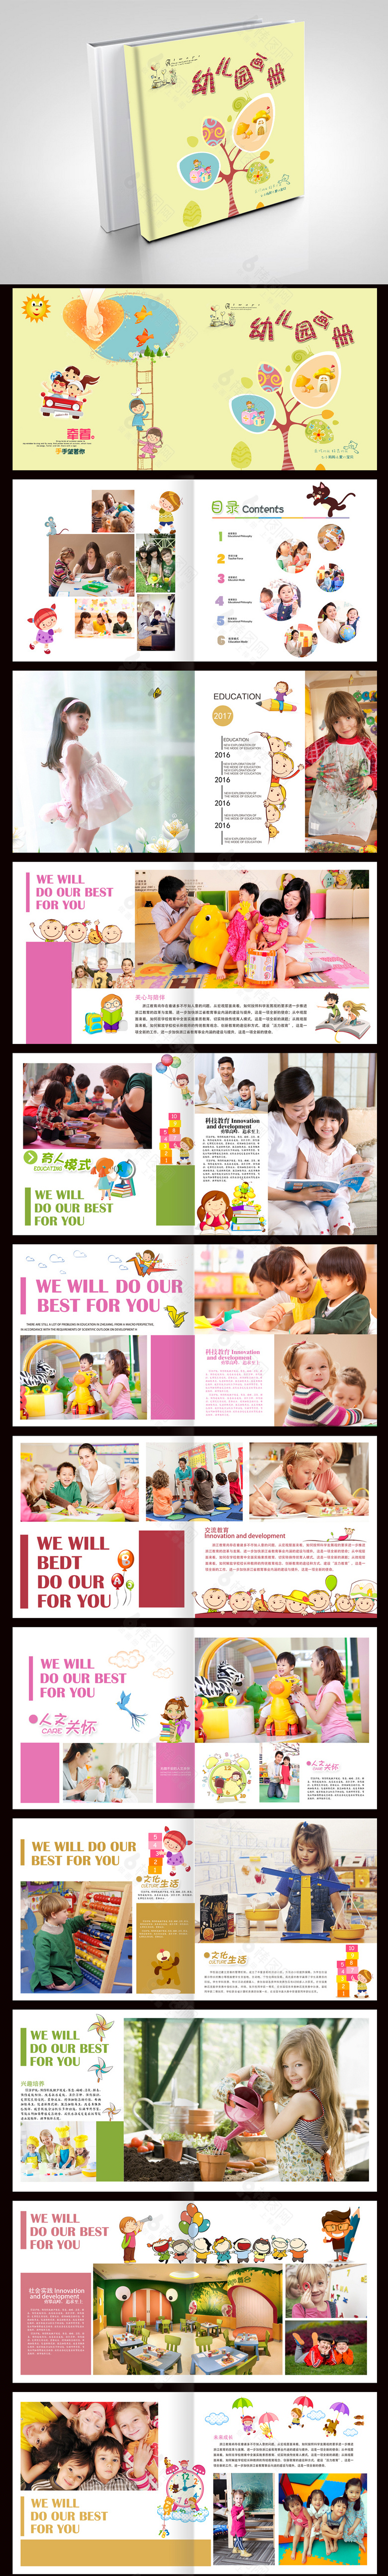 快乐童年幼儿园画册设计